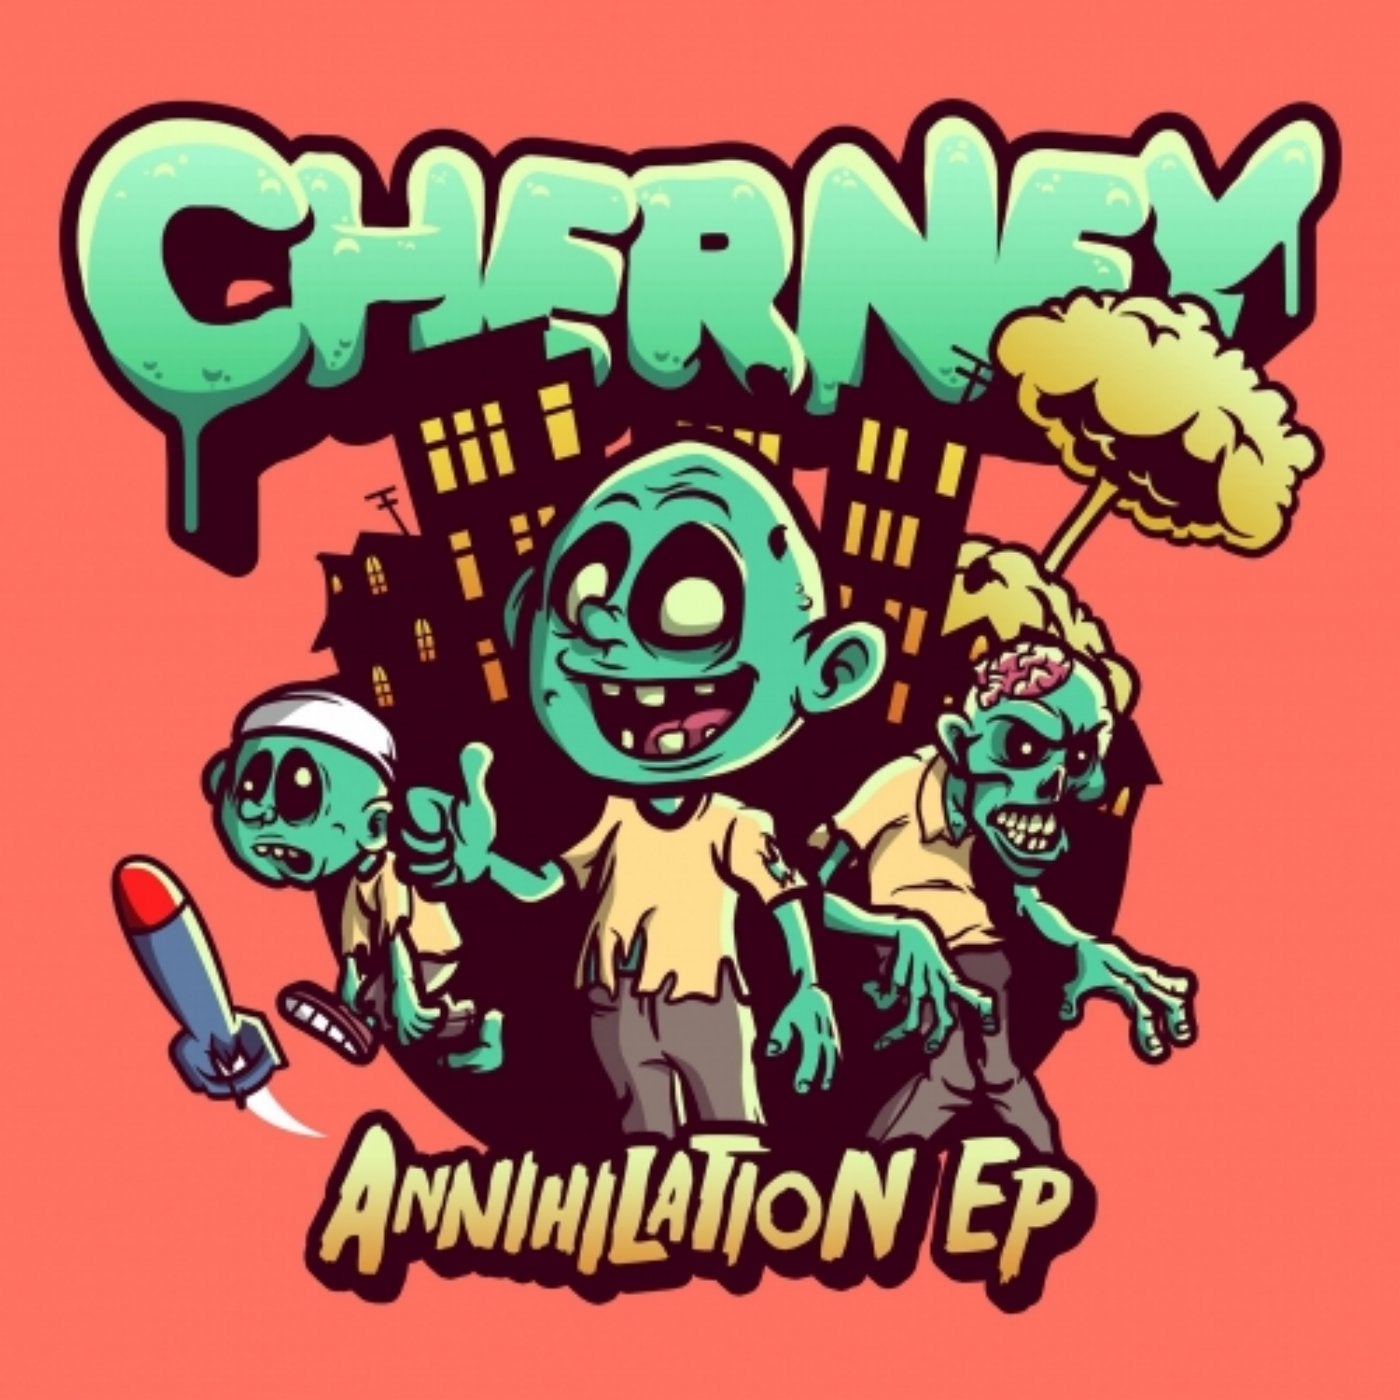 Annihilation EP